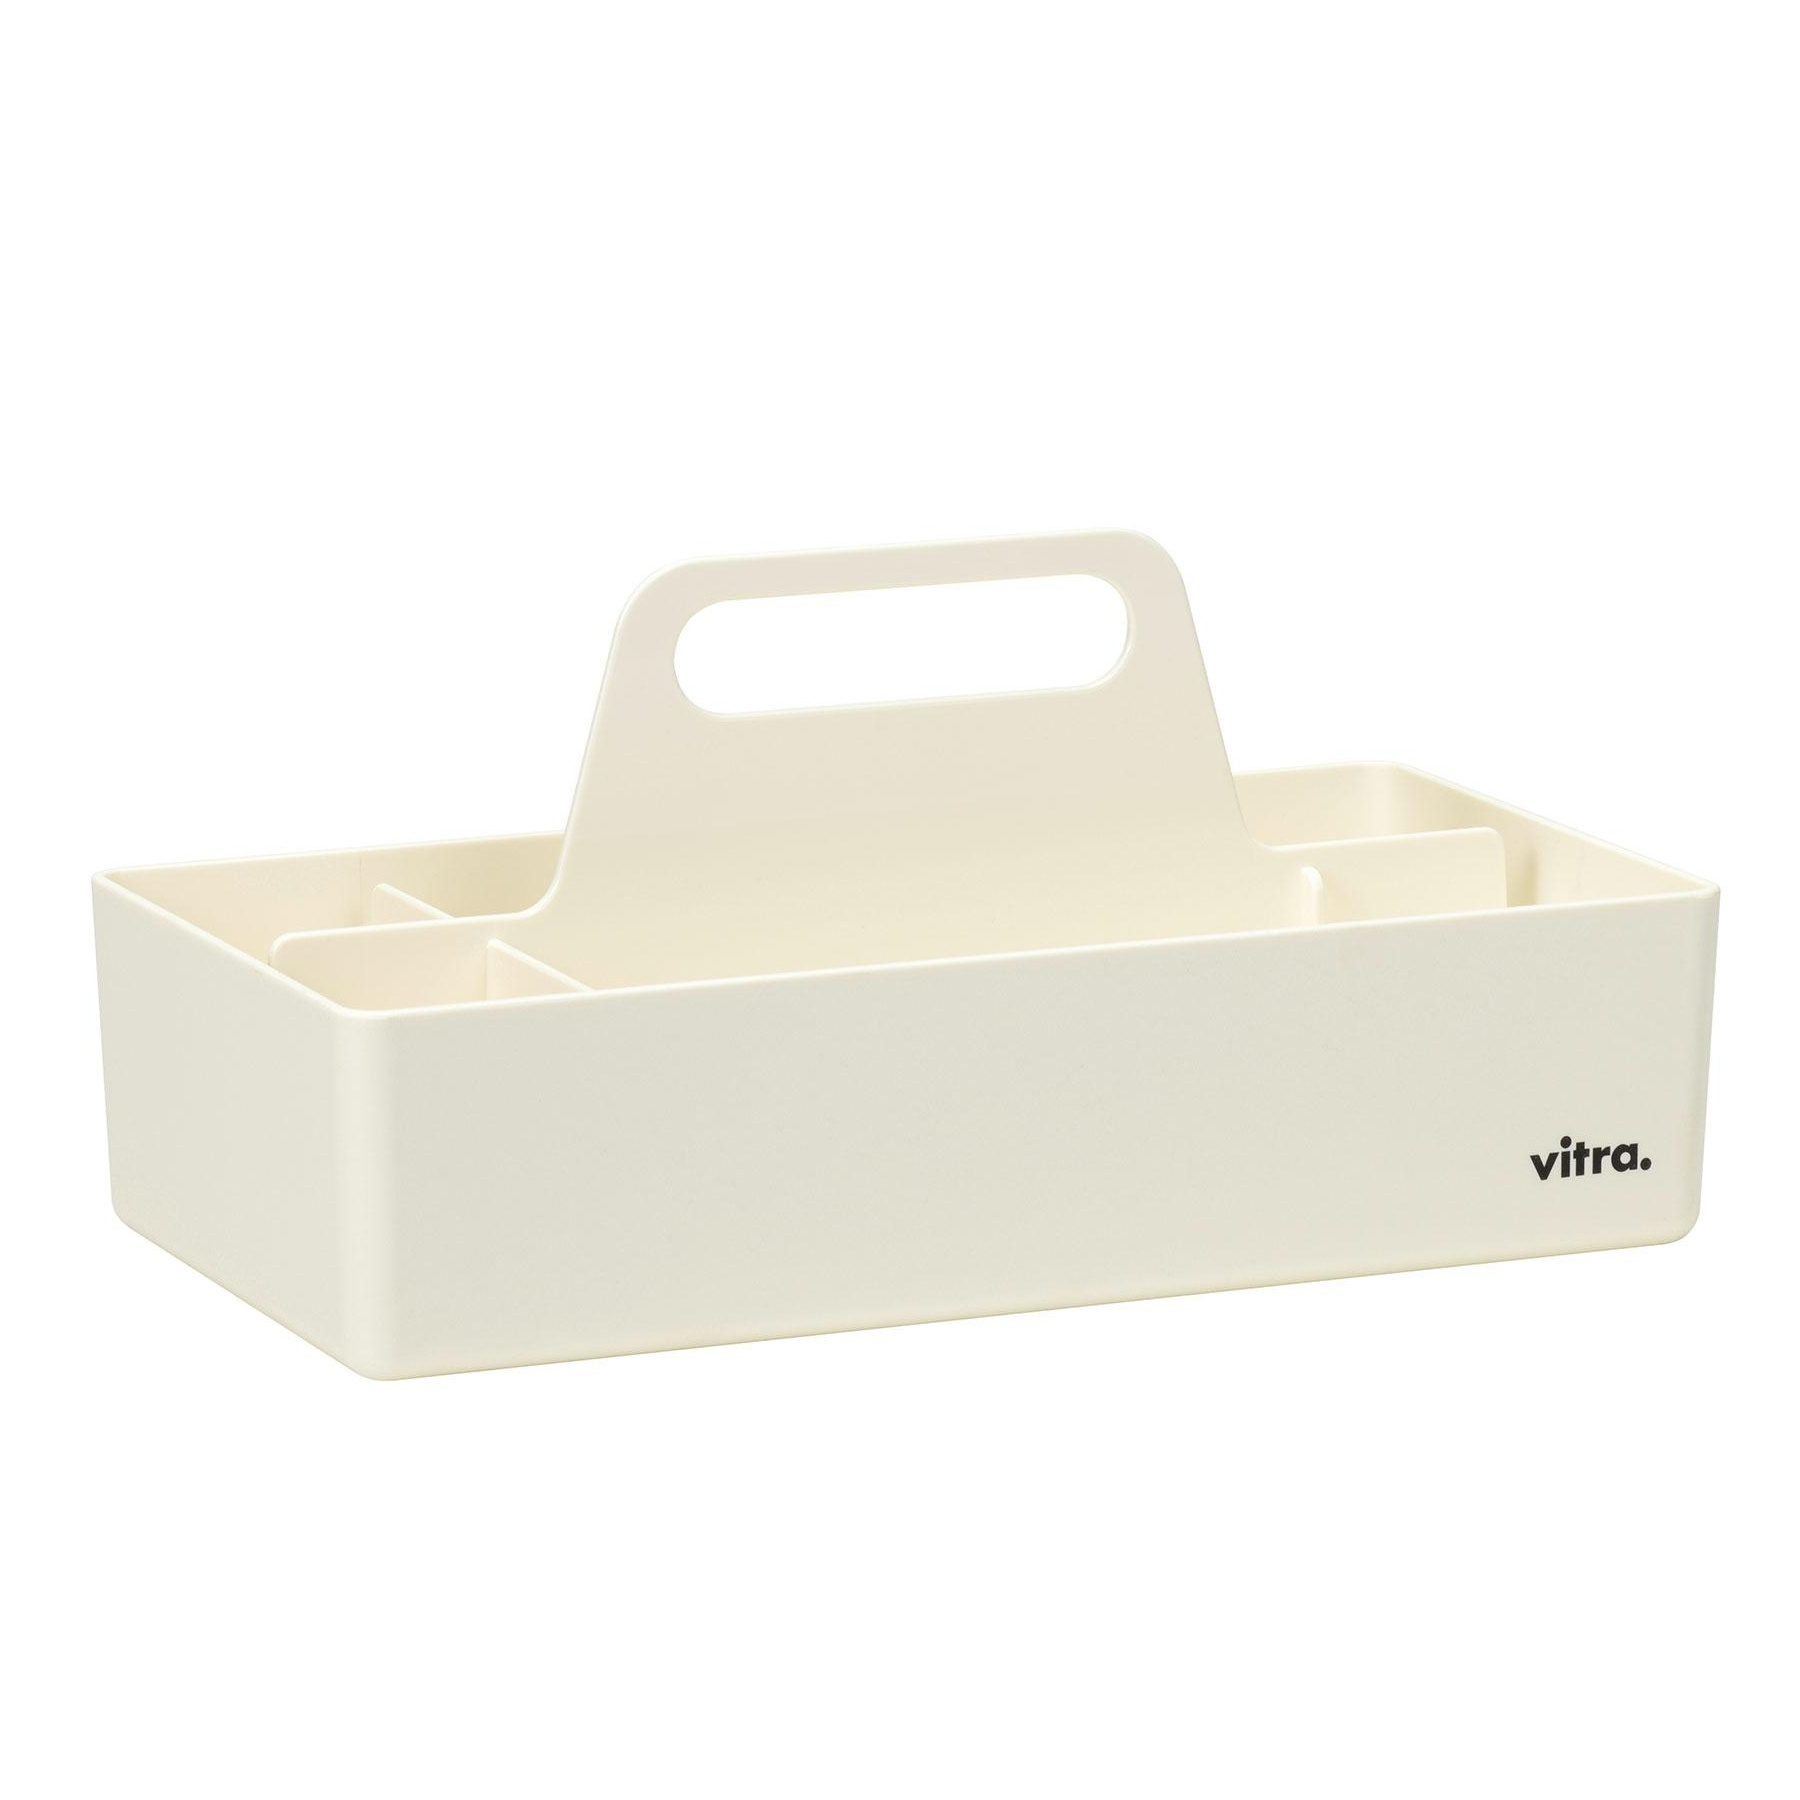 Vitra - Toolbox RE Aufbewahrungsbox - weiß/recyceltes ABS/LxBxH 32,7x16,7x15,6cm von Vitra